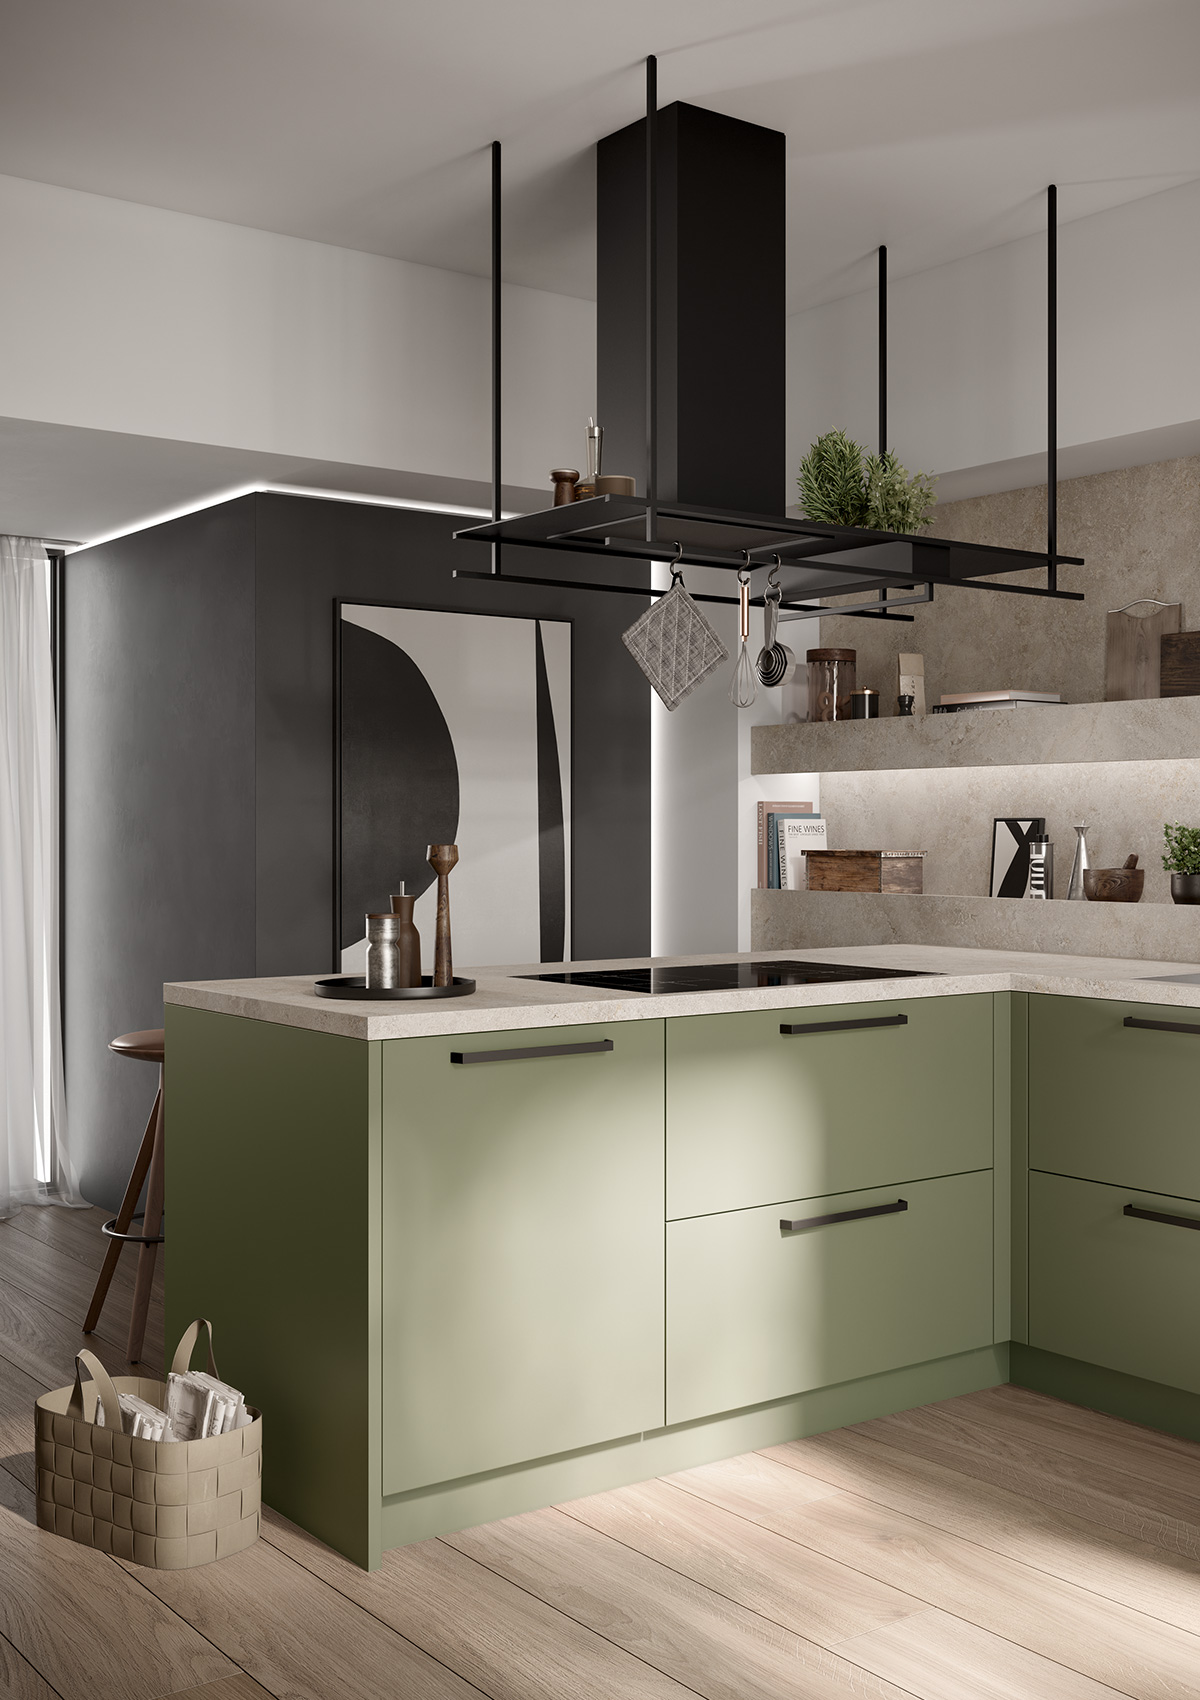 Vista in dettaglio della cucina iSCALA in verde oliva